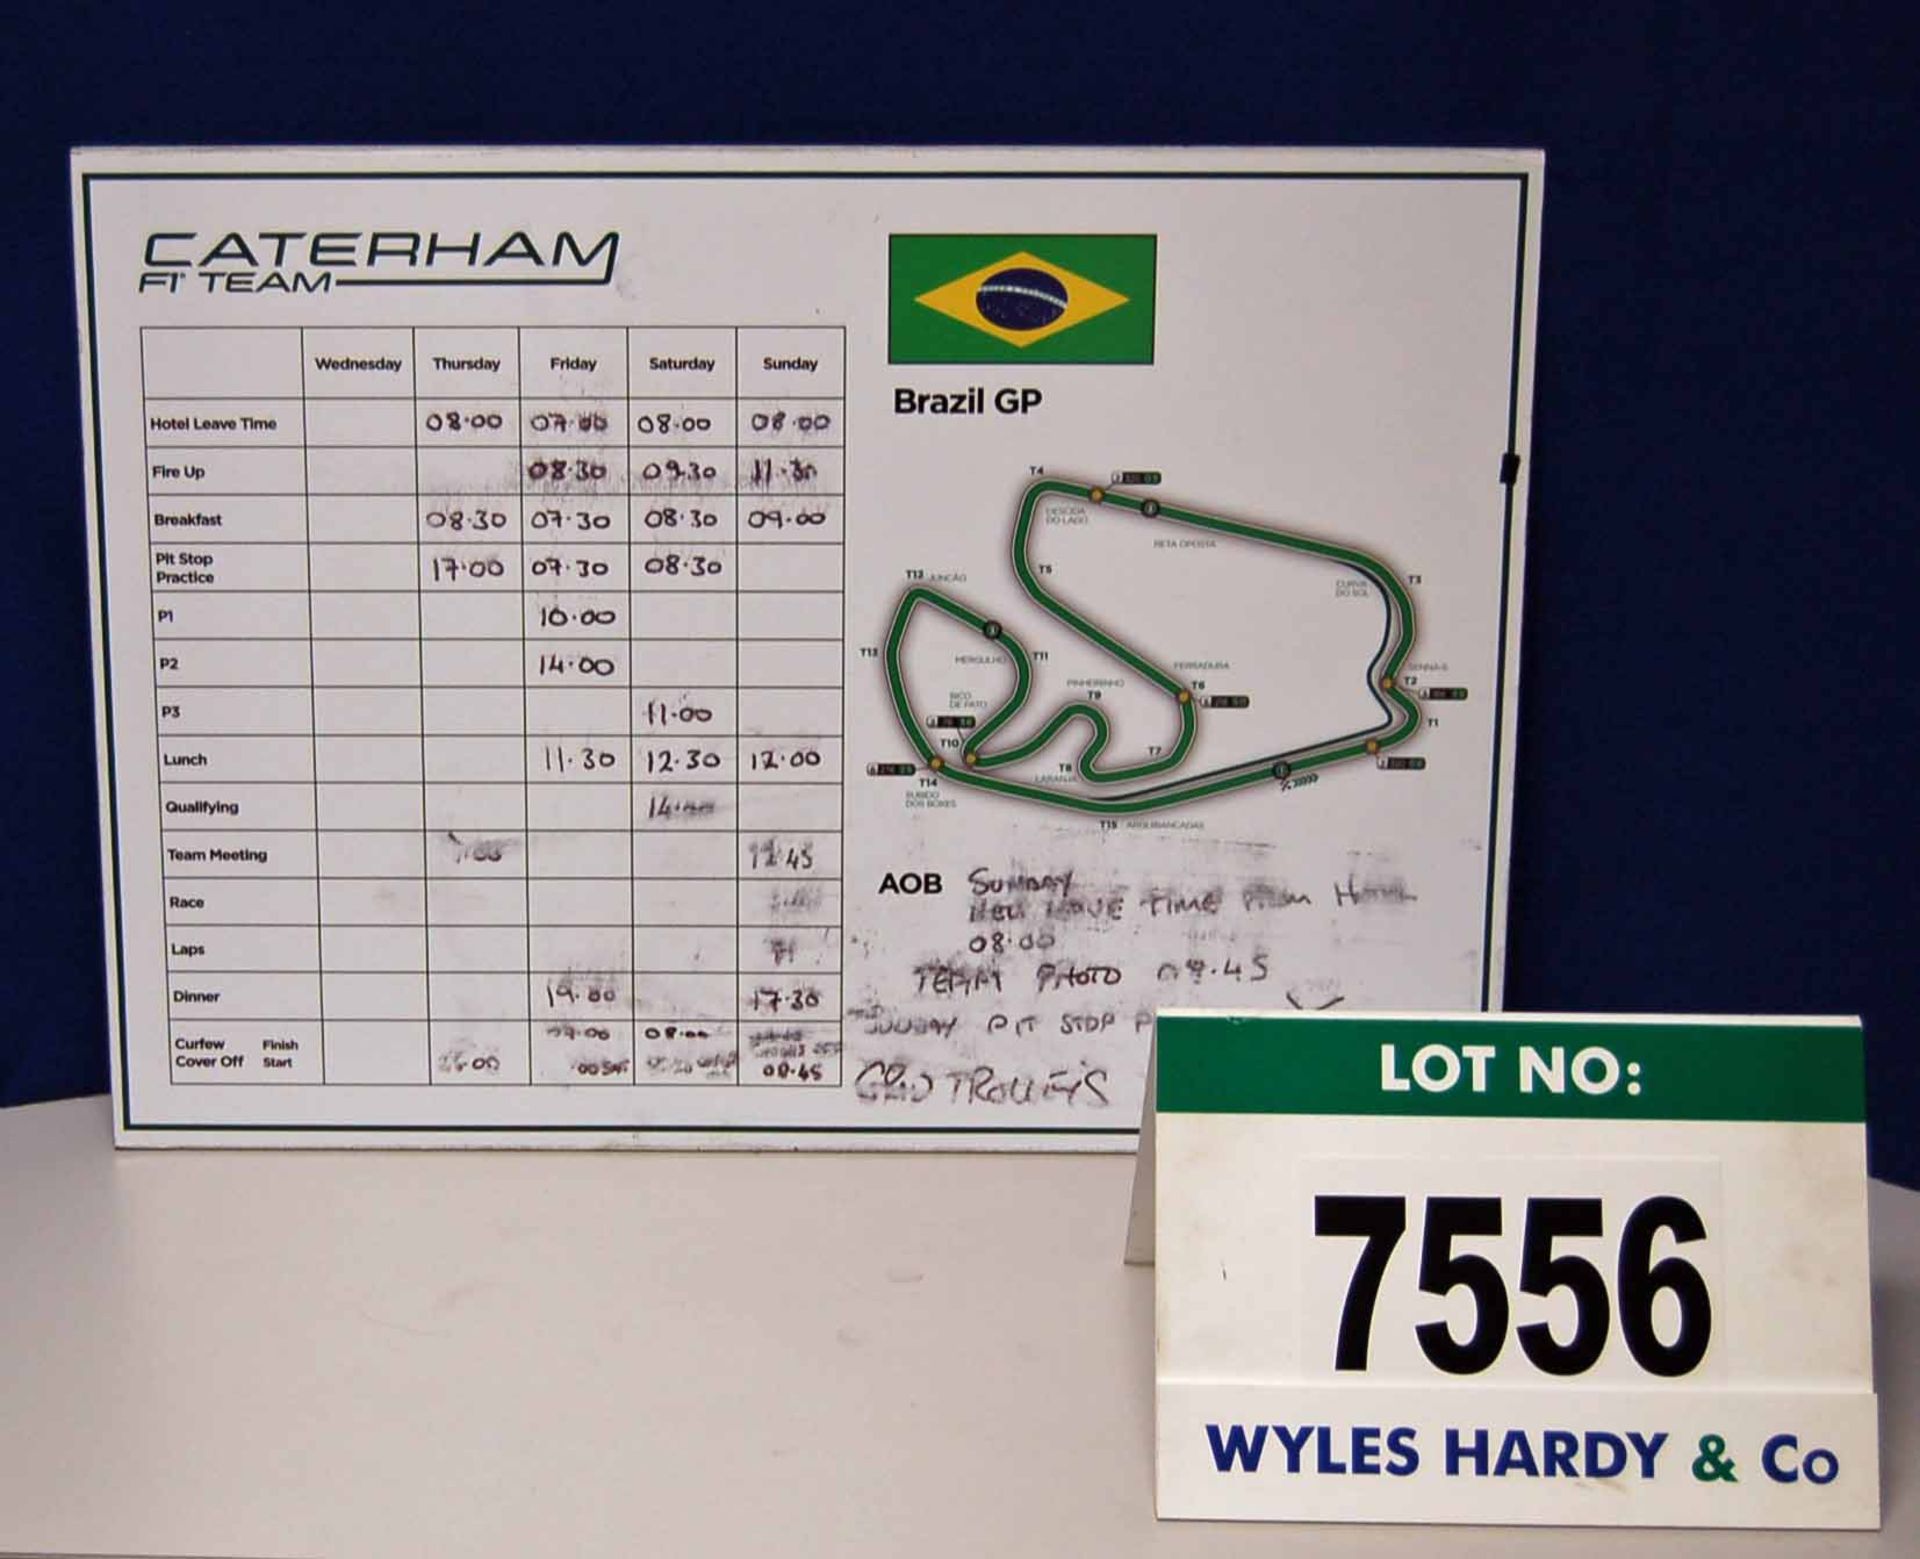 A CATERHAM F1 Team 500mm x 700mm Foamex Pit Crew Information Board - Brazilian Grand Prix  Want it